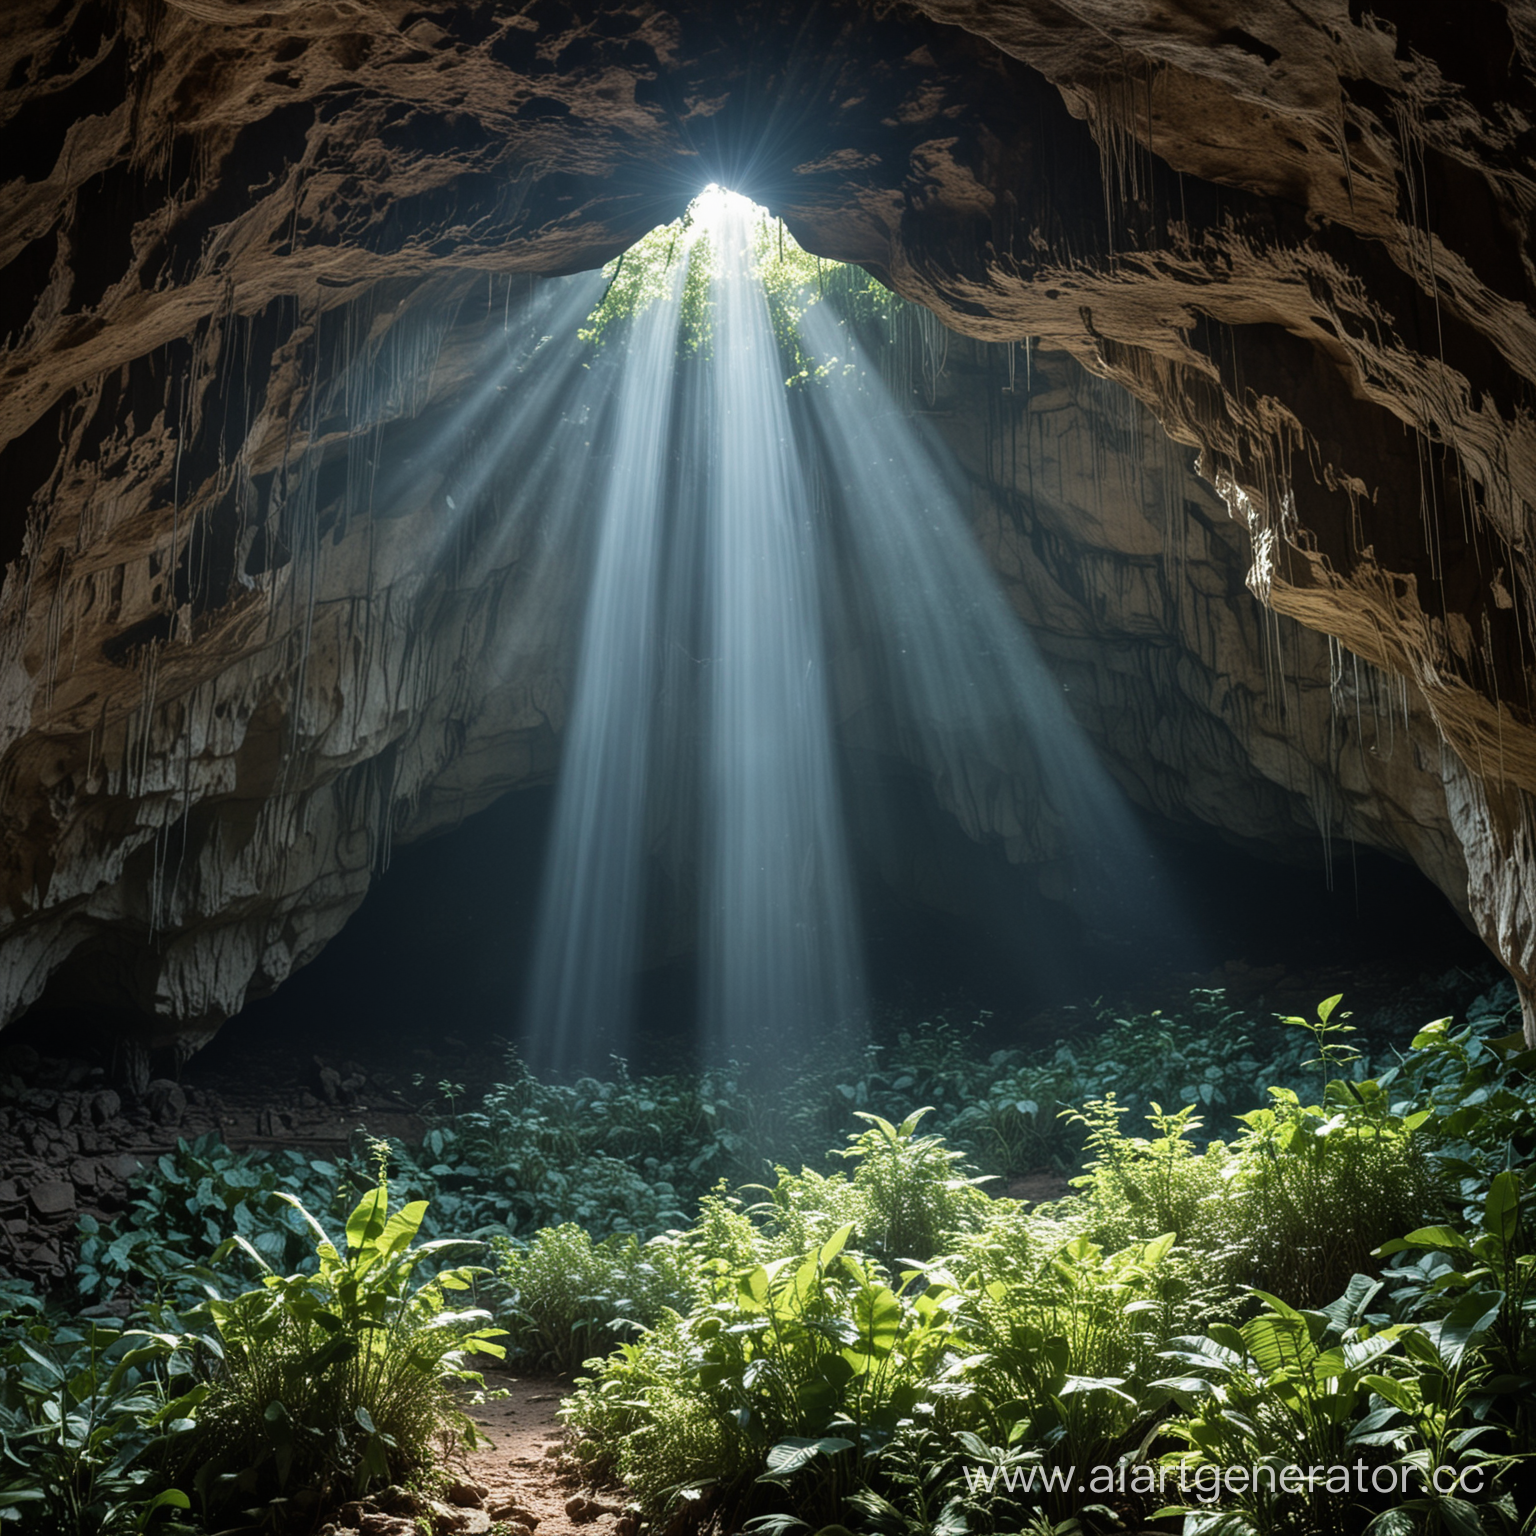 Большая пещера наполненная растительностью и деревьями, а с верху пробивают тусклые синеватые лучи света из небольшого отверстия